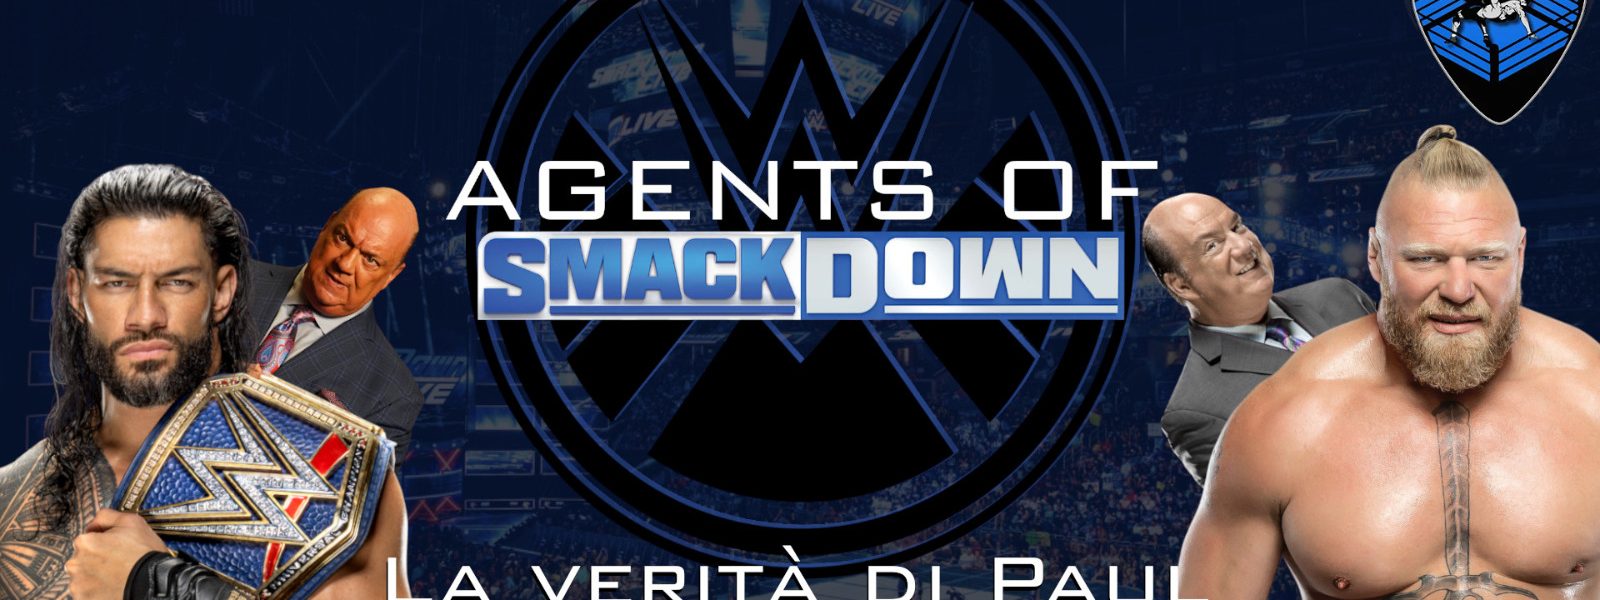 La verità di Paul Heyman - Agents Of Smackdown EP.34